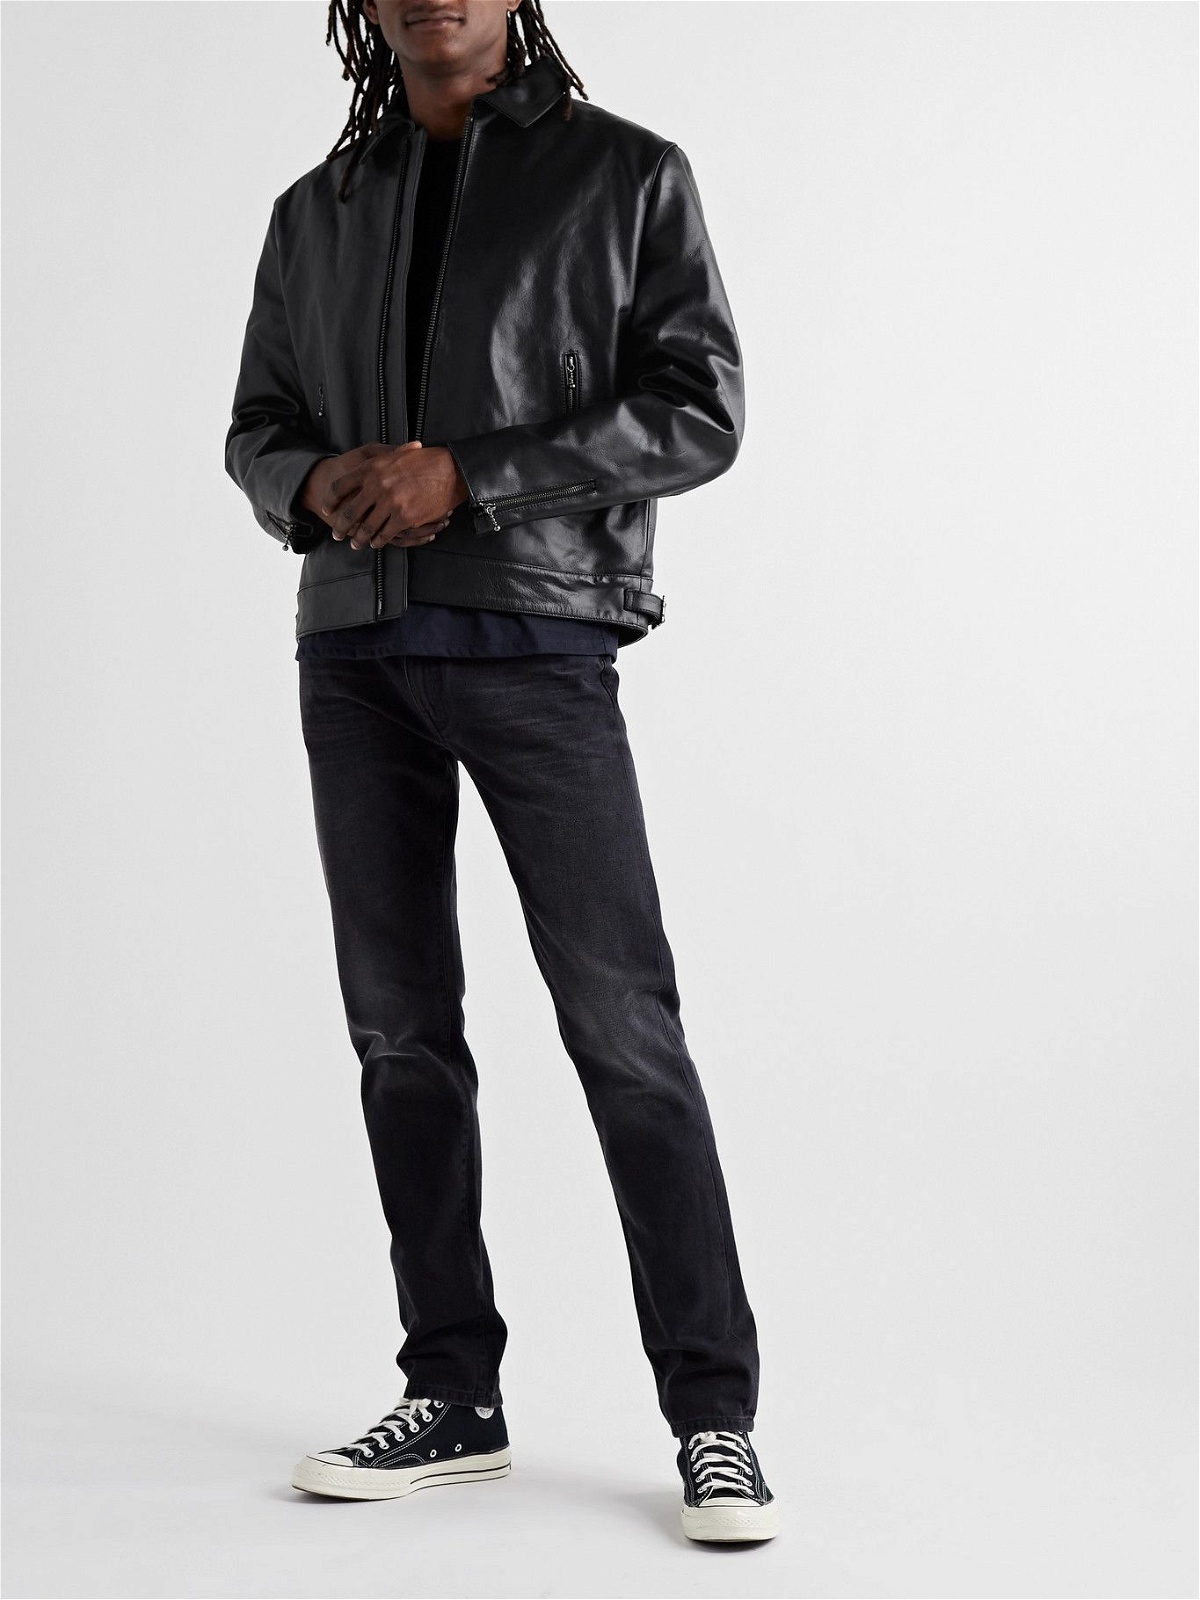 Nudie Jeans - Eddy Leather Blouson Jacket - Black